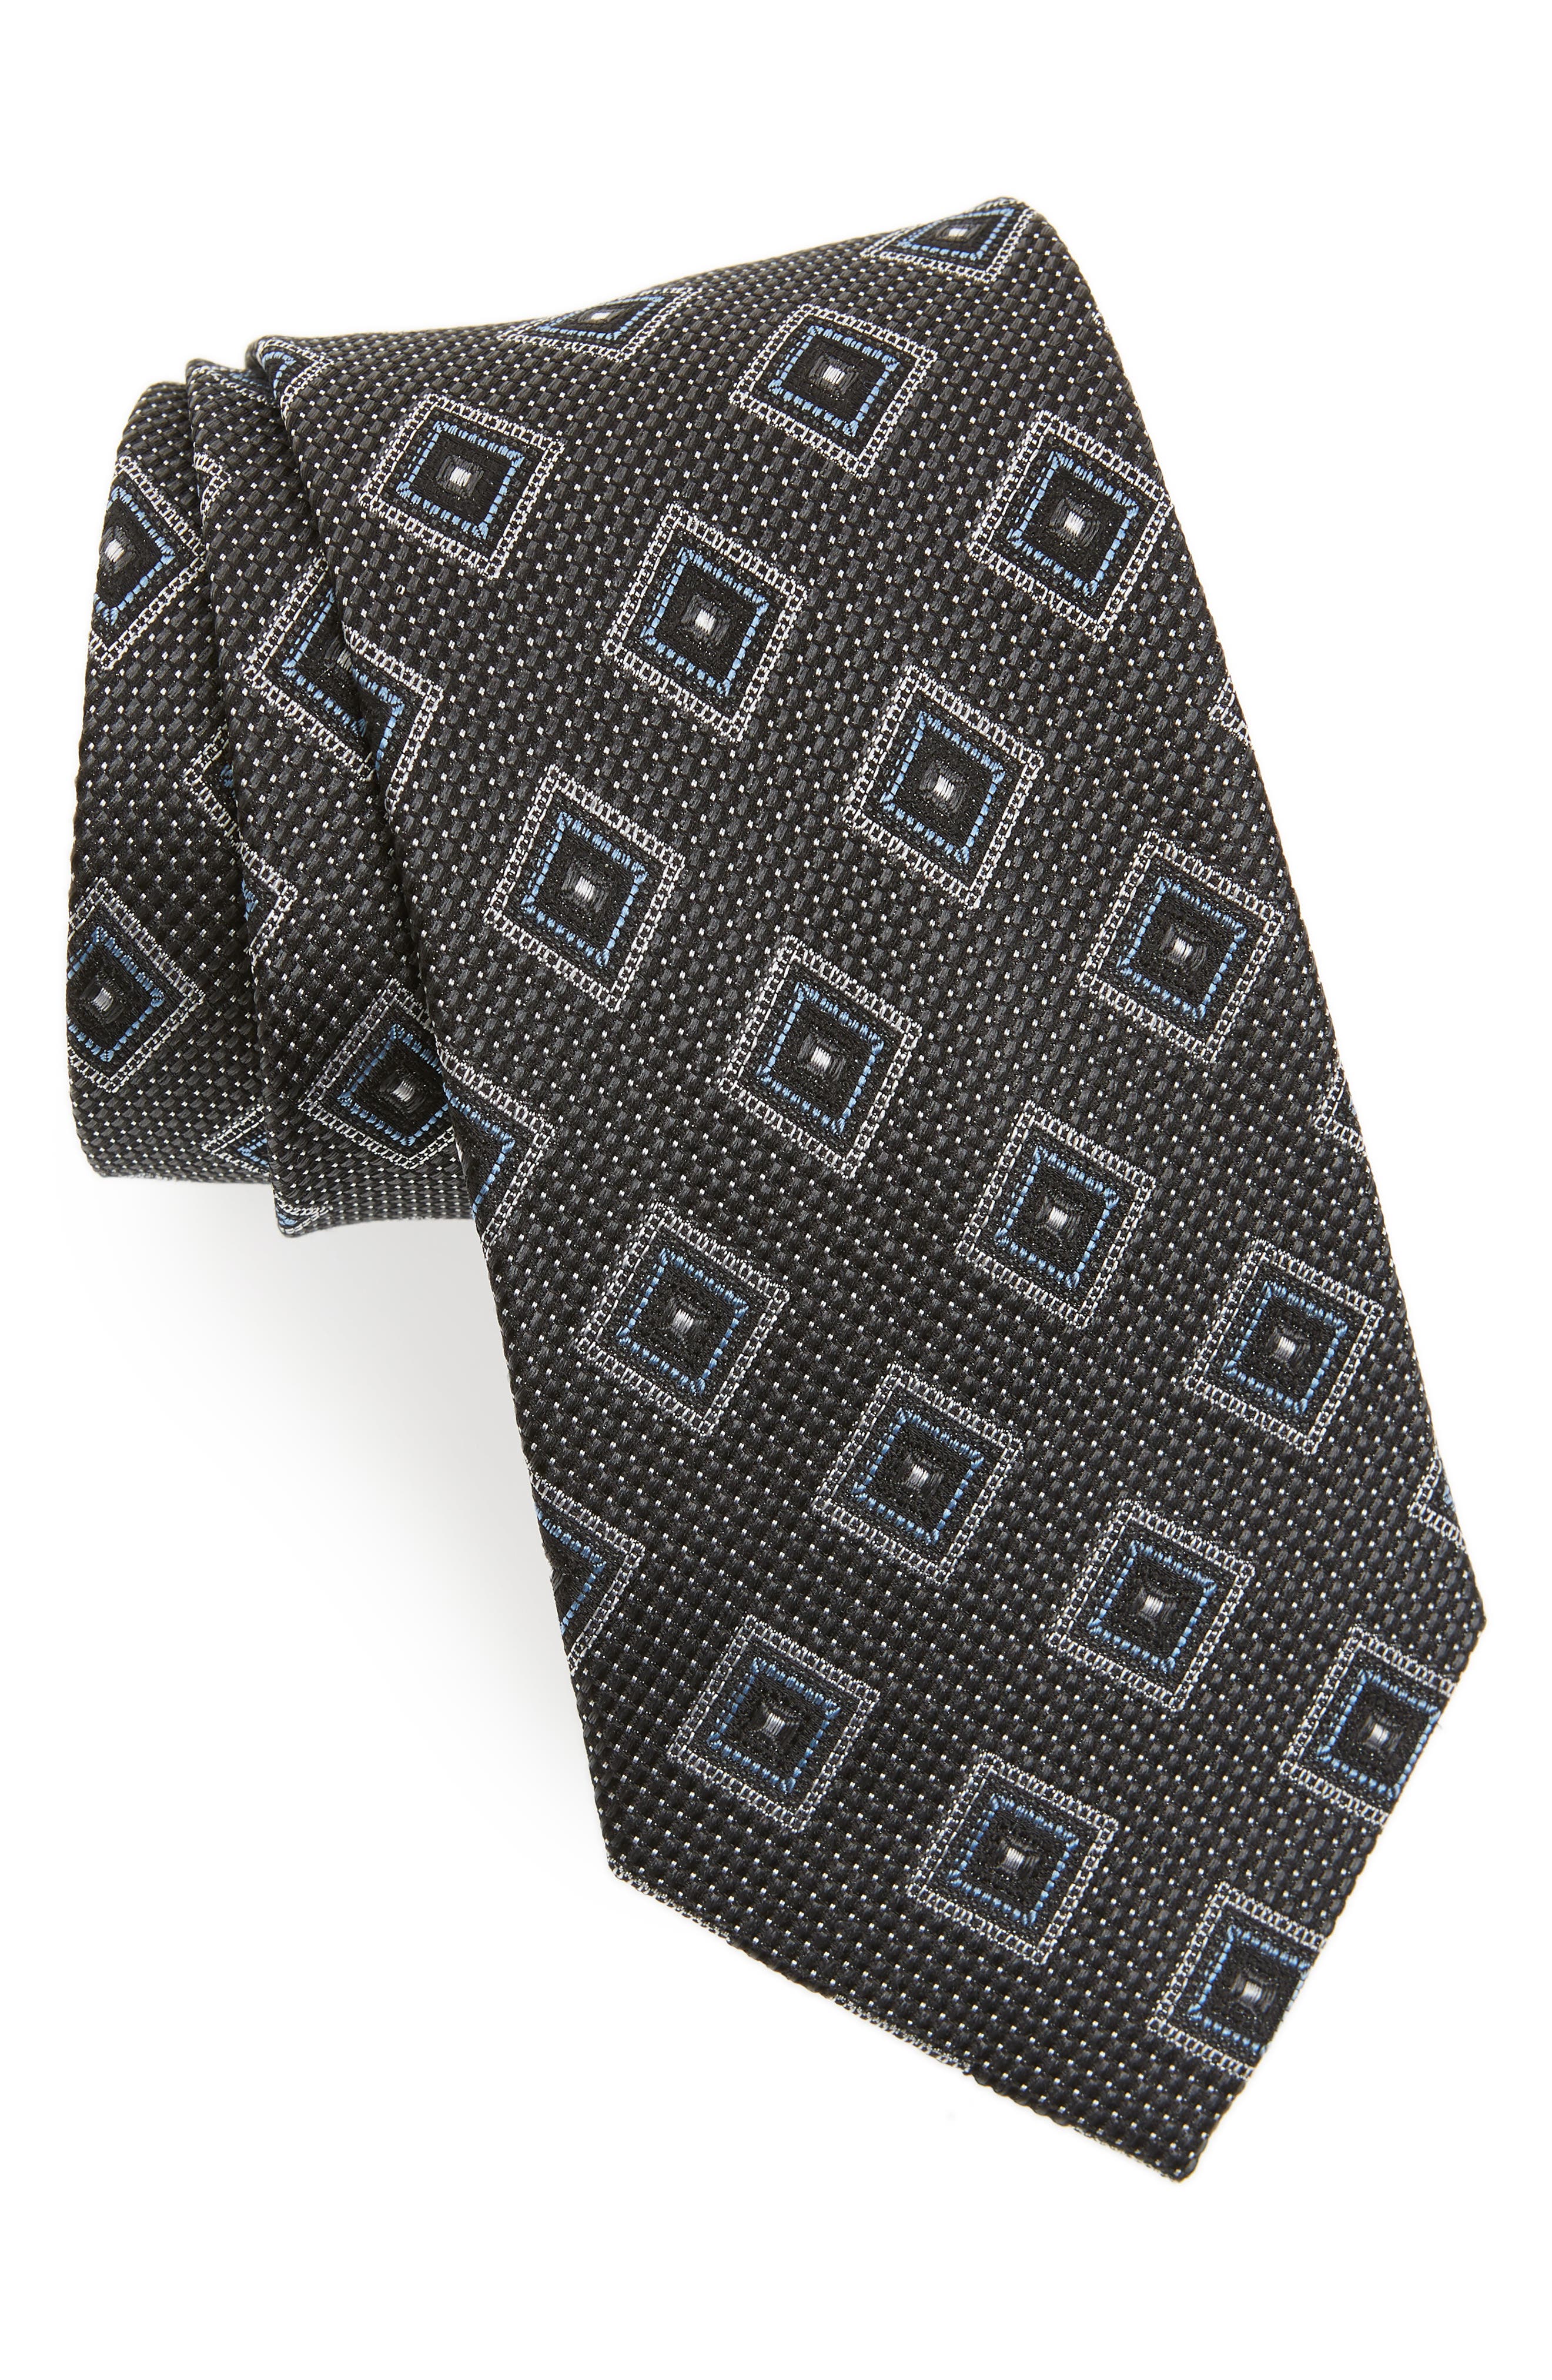 1940s Mens Ties | Wide Ties & Painted Ties